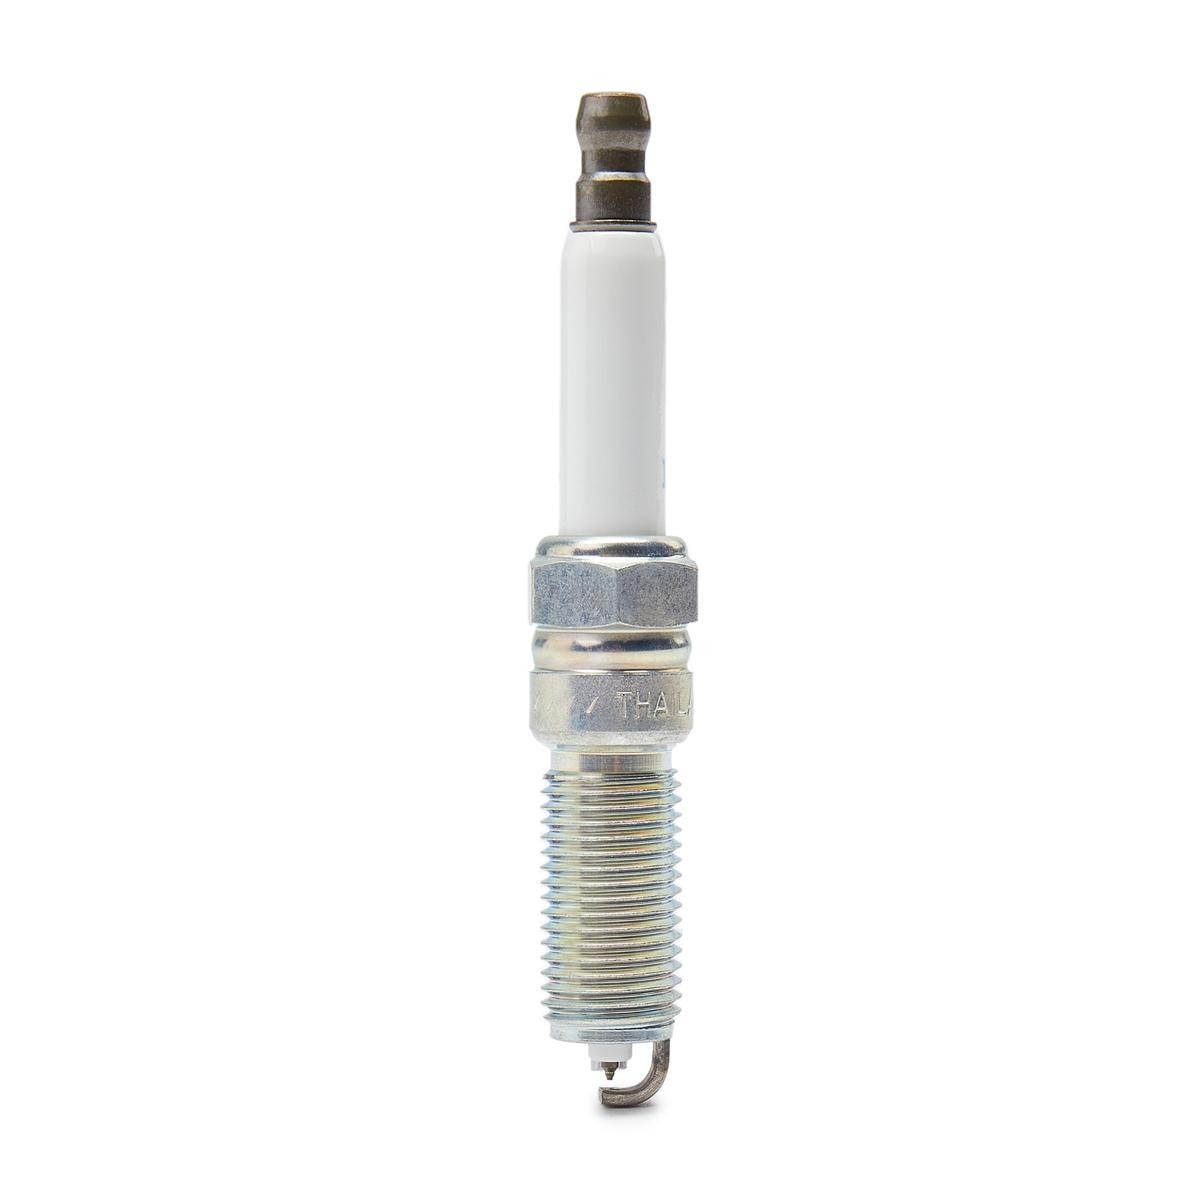 NGK 91970 Spark plug M12 x 1,25, Spanner Size: 14 mm